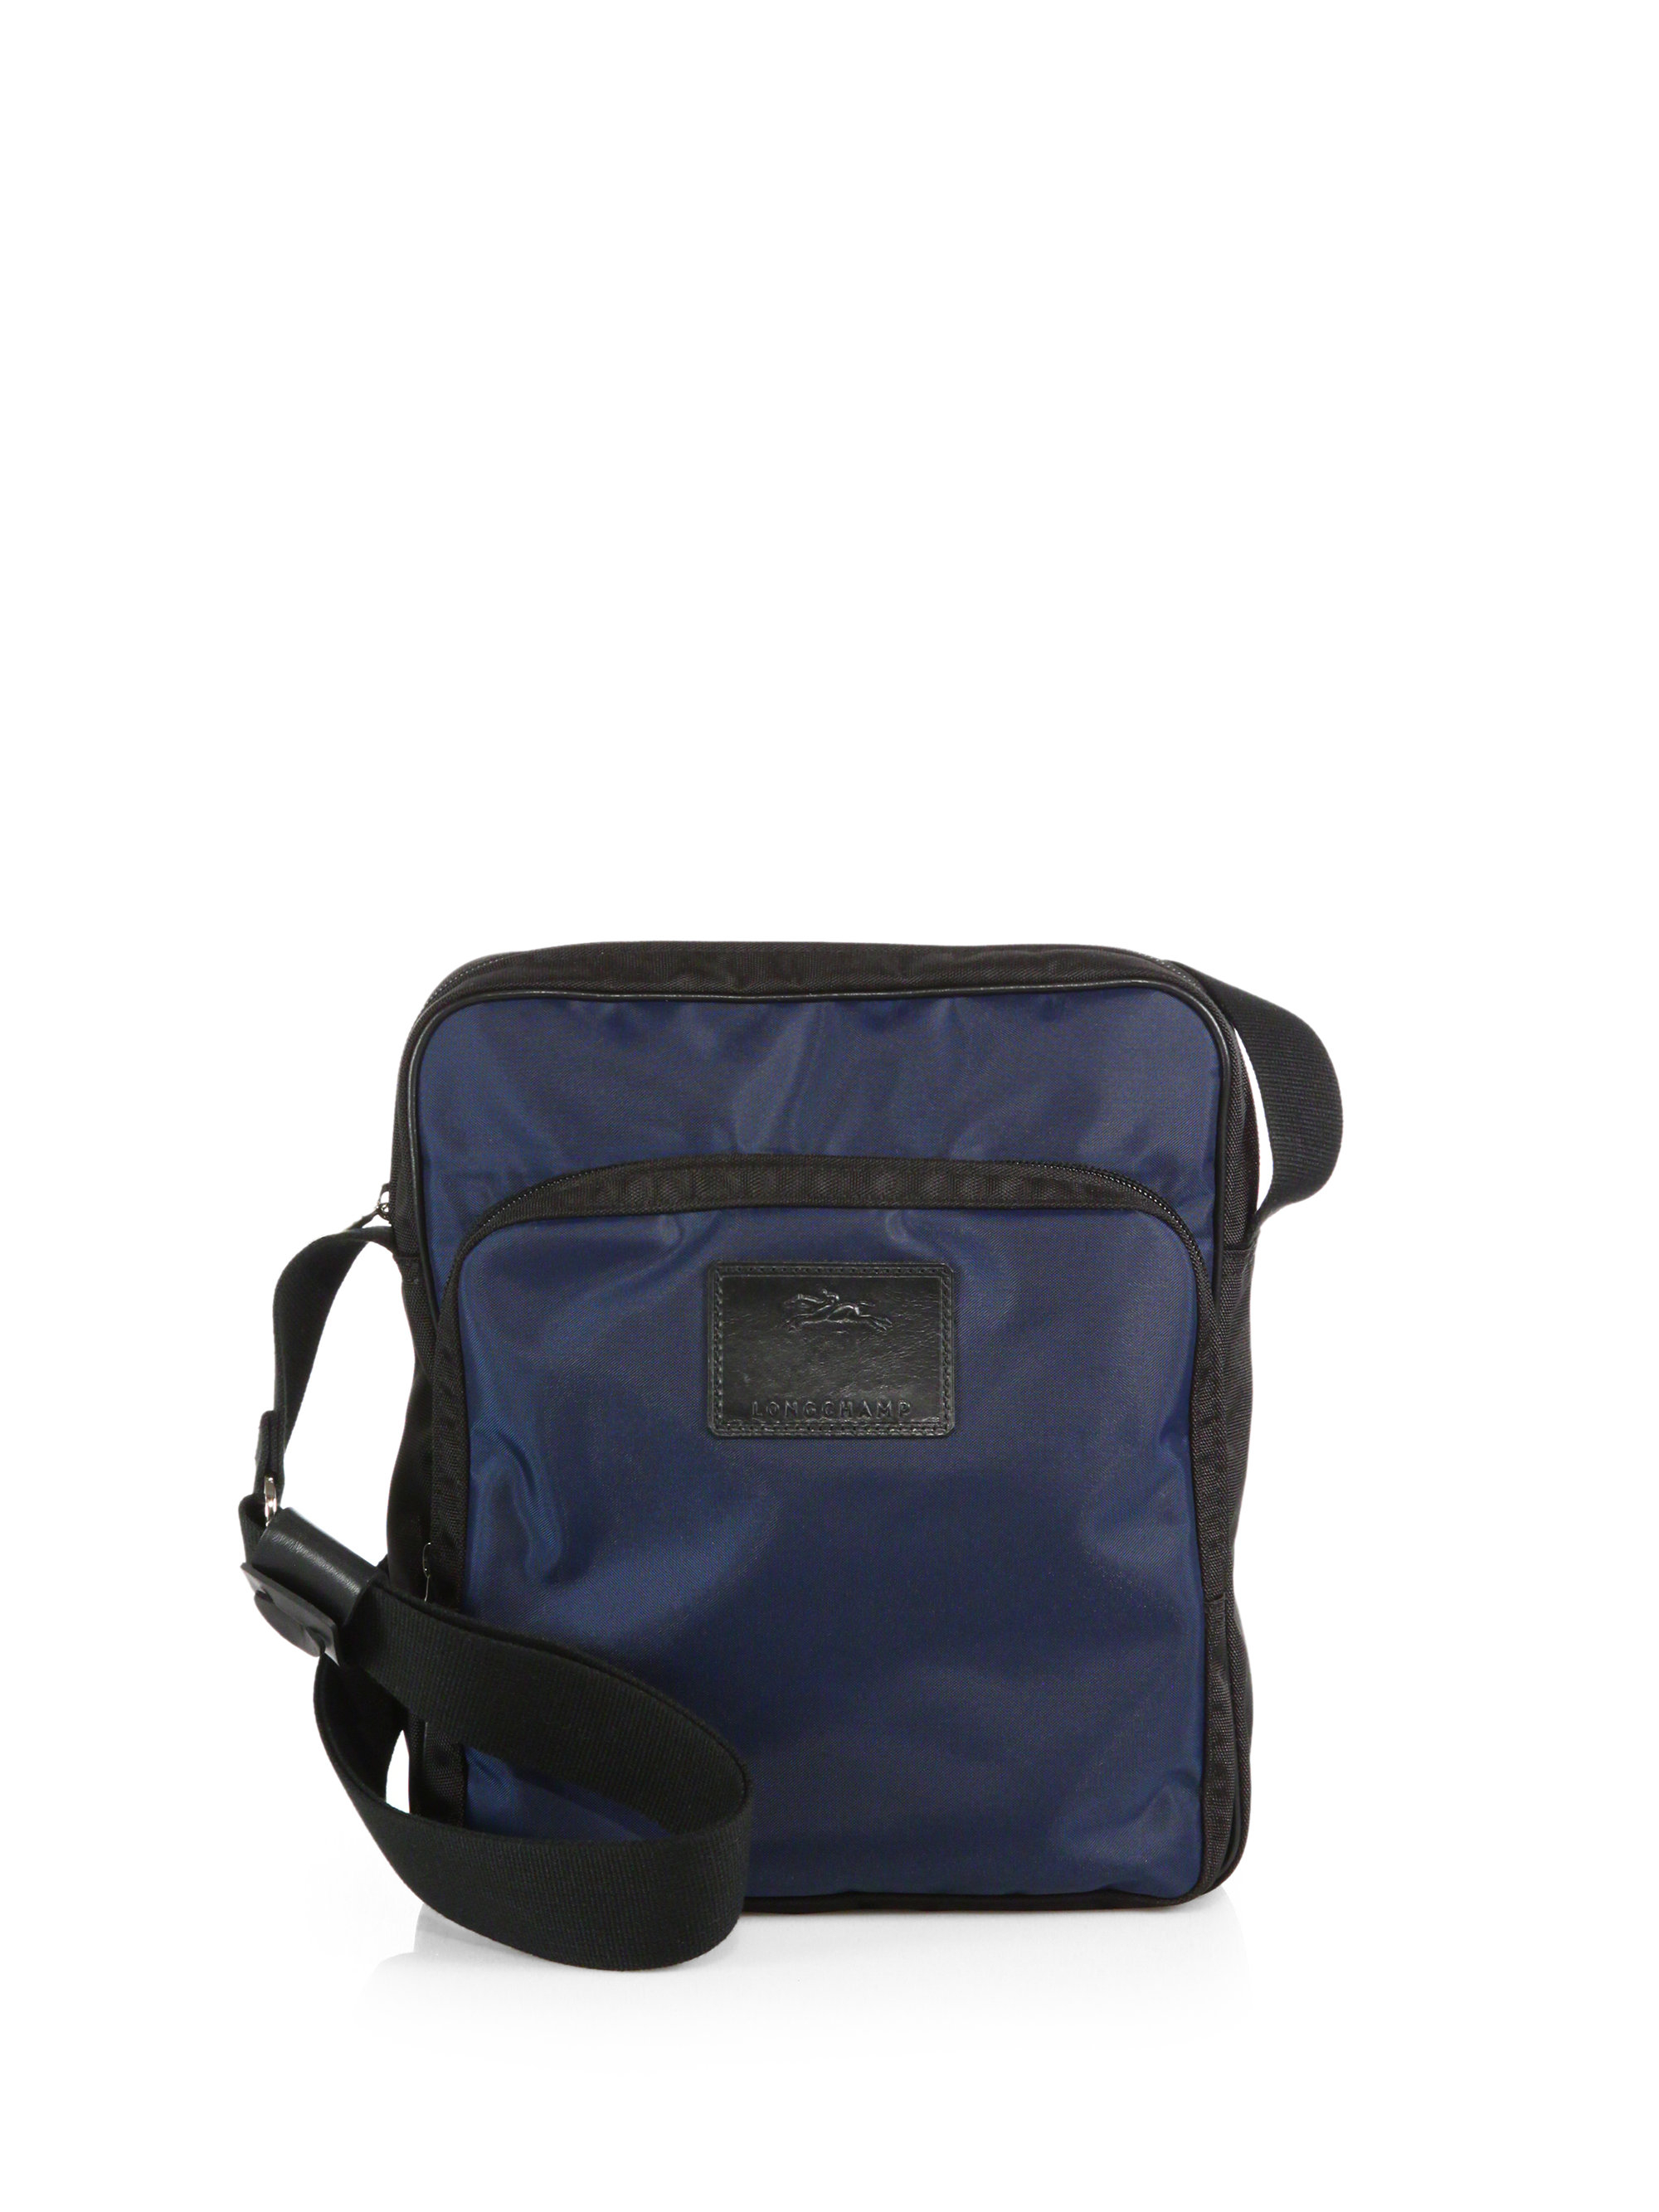 Lyst - Longchamp Nylon Crossbody Bag in Blue for Men